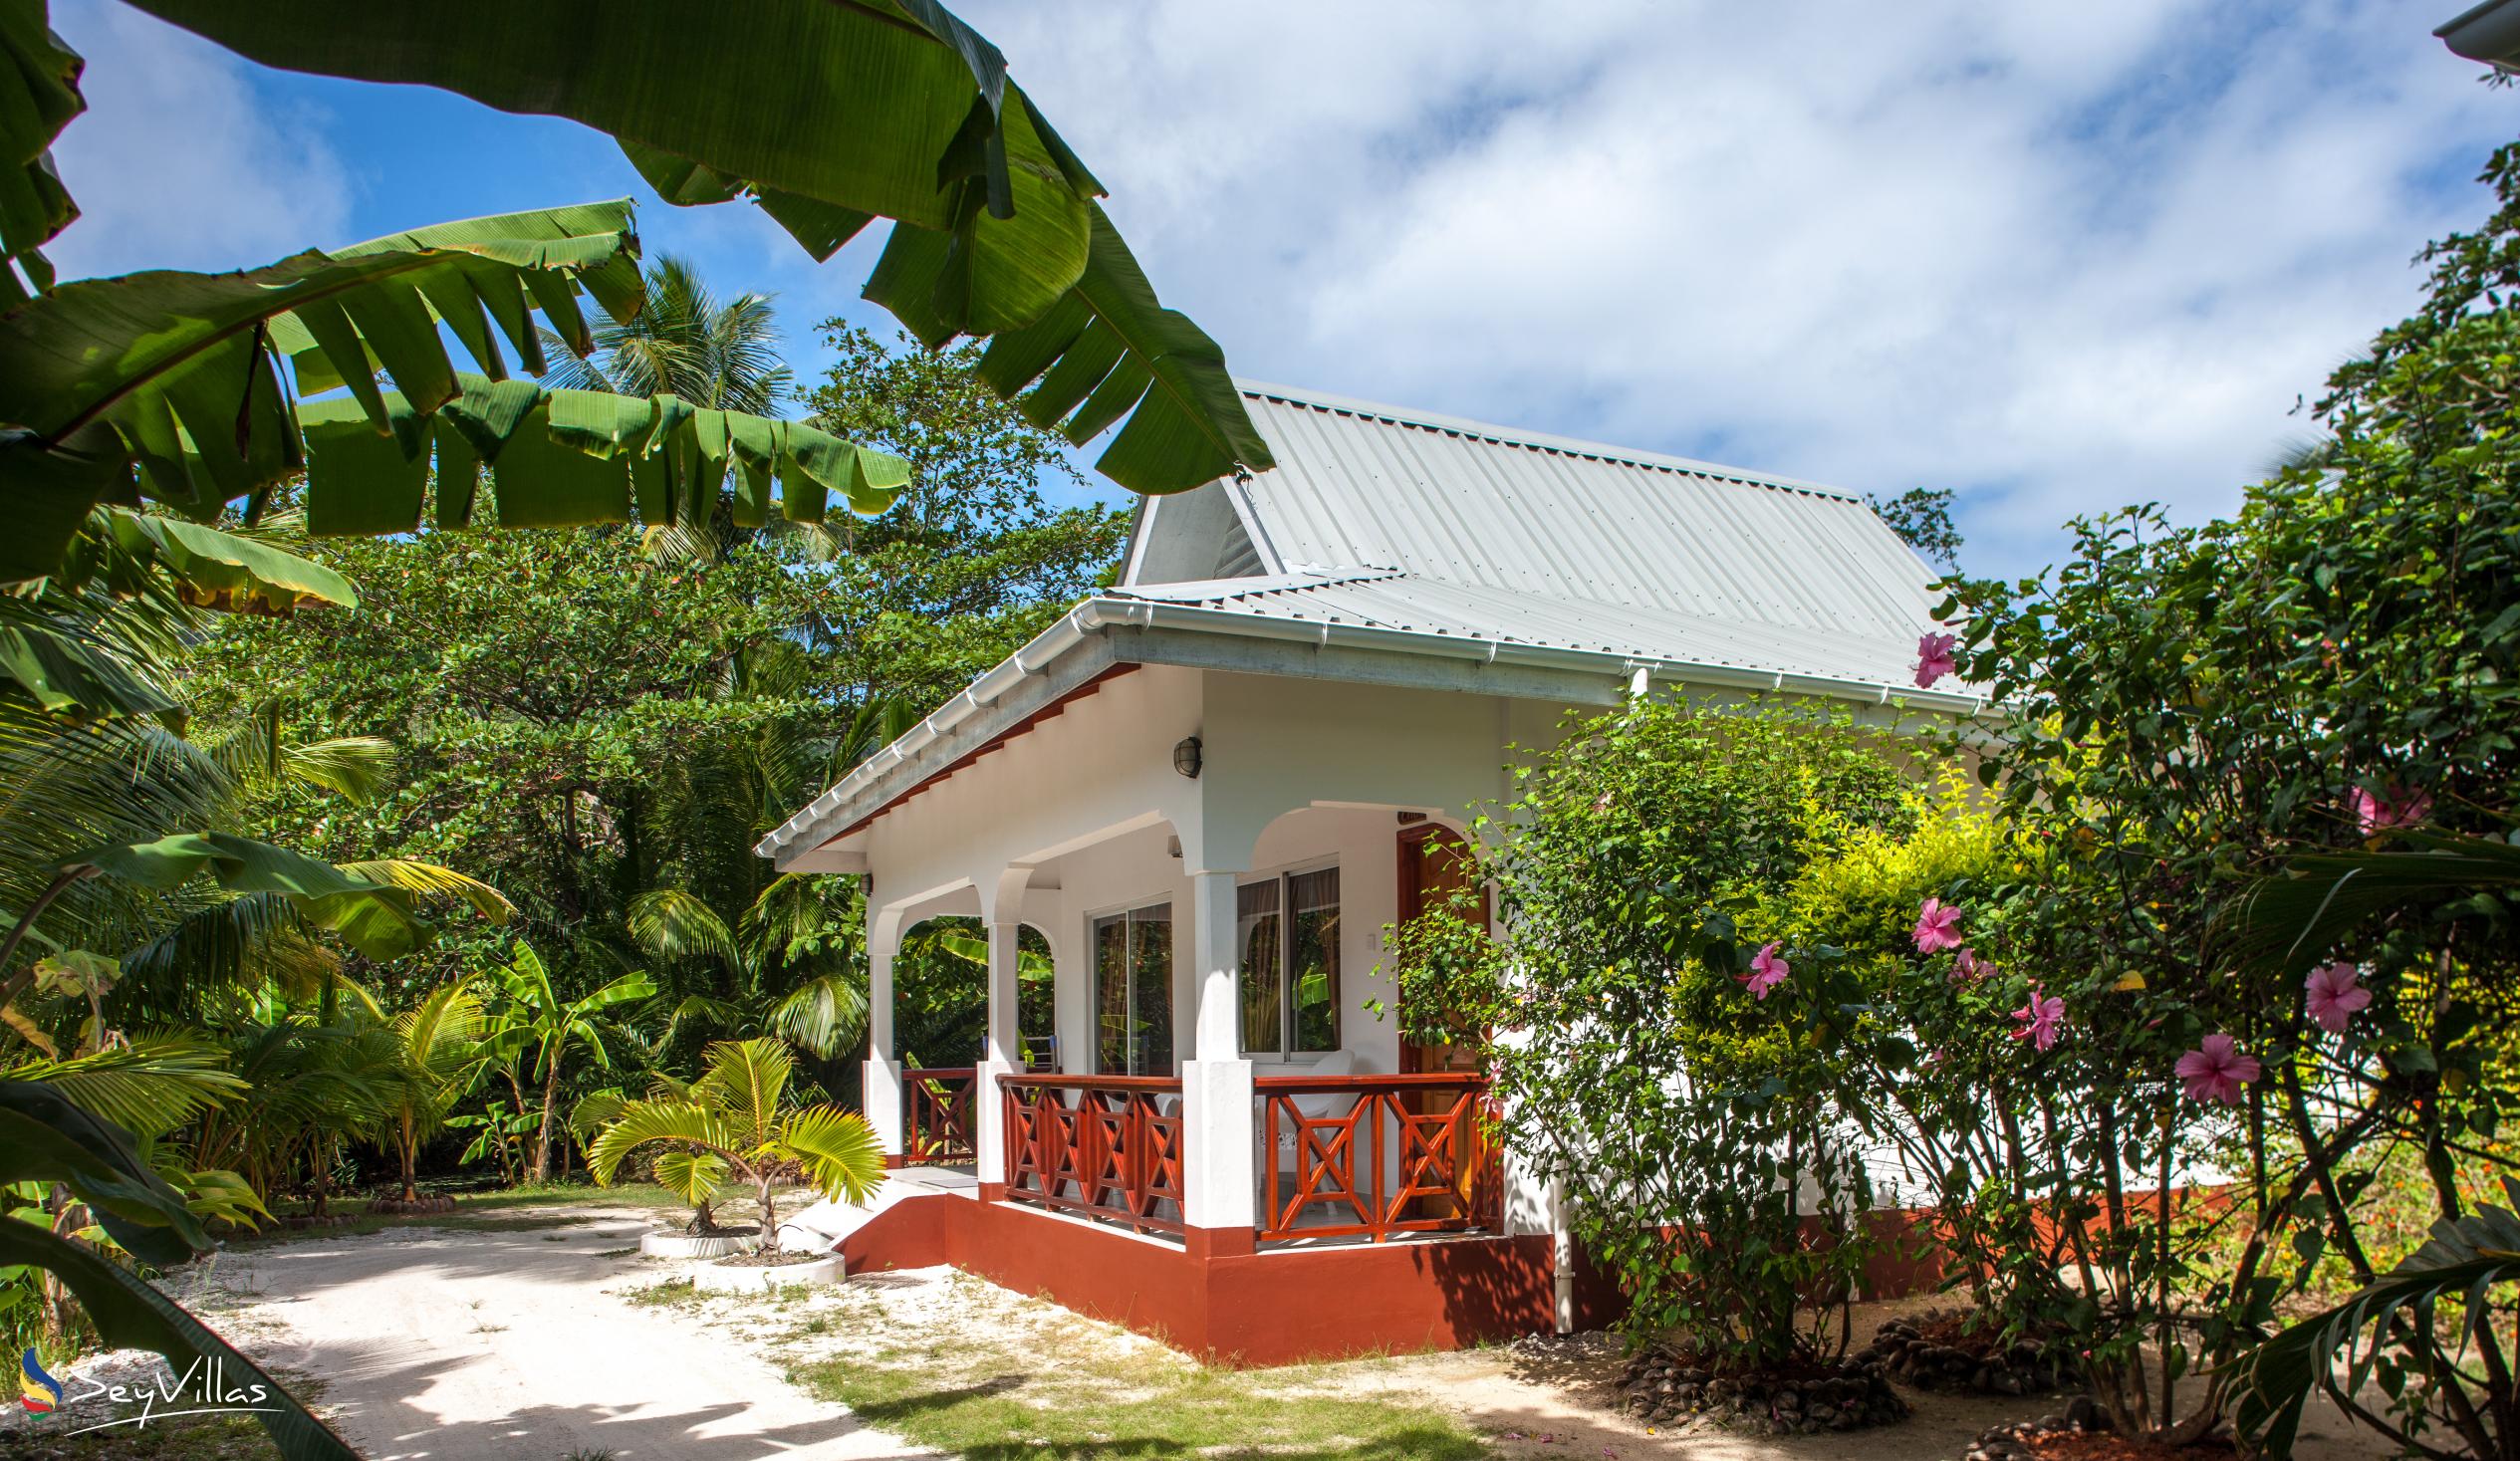 Foto 8: Villa Veuve - Aussenbereich - La Digue (Seychellen)